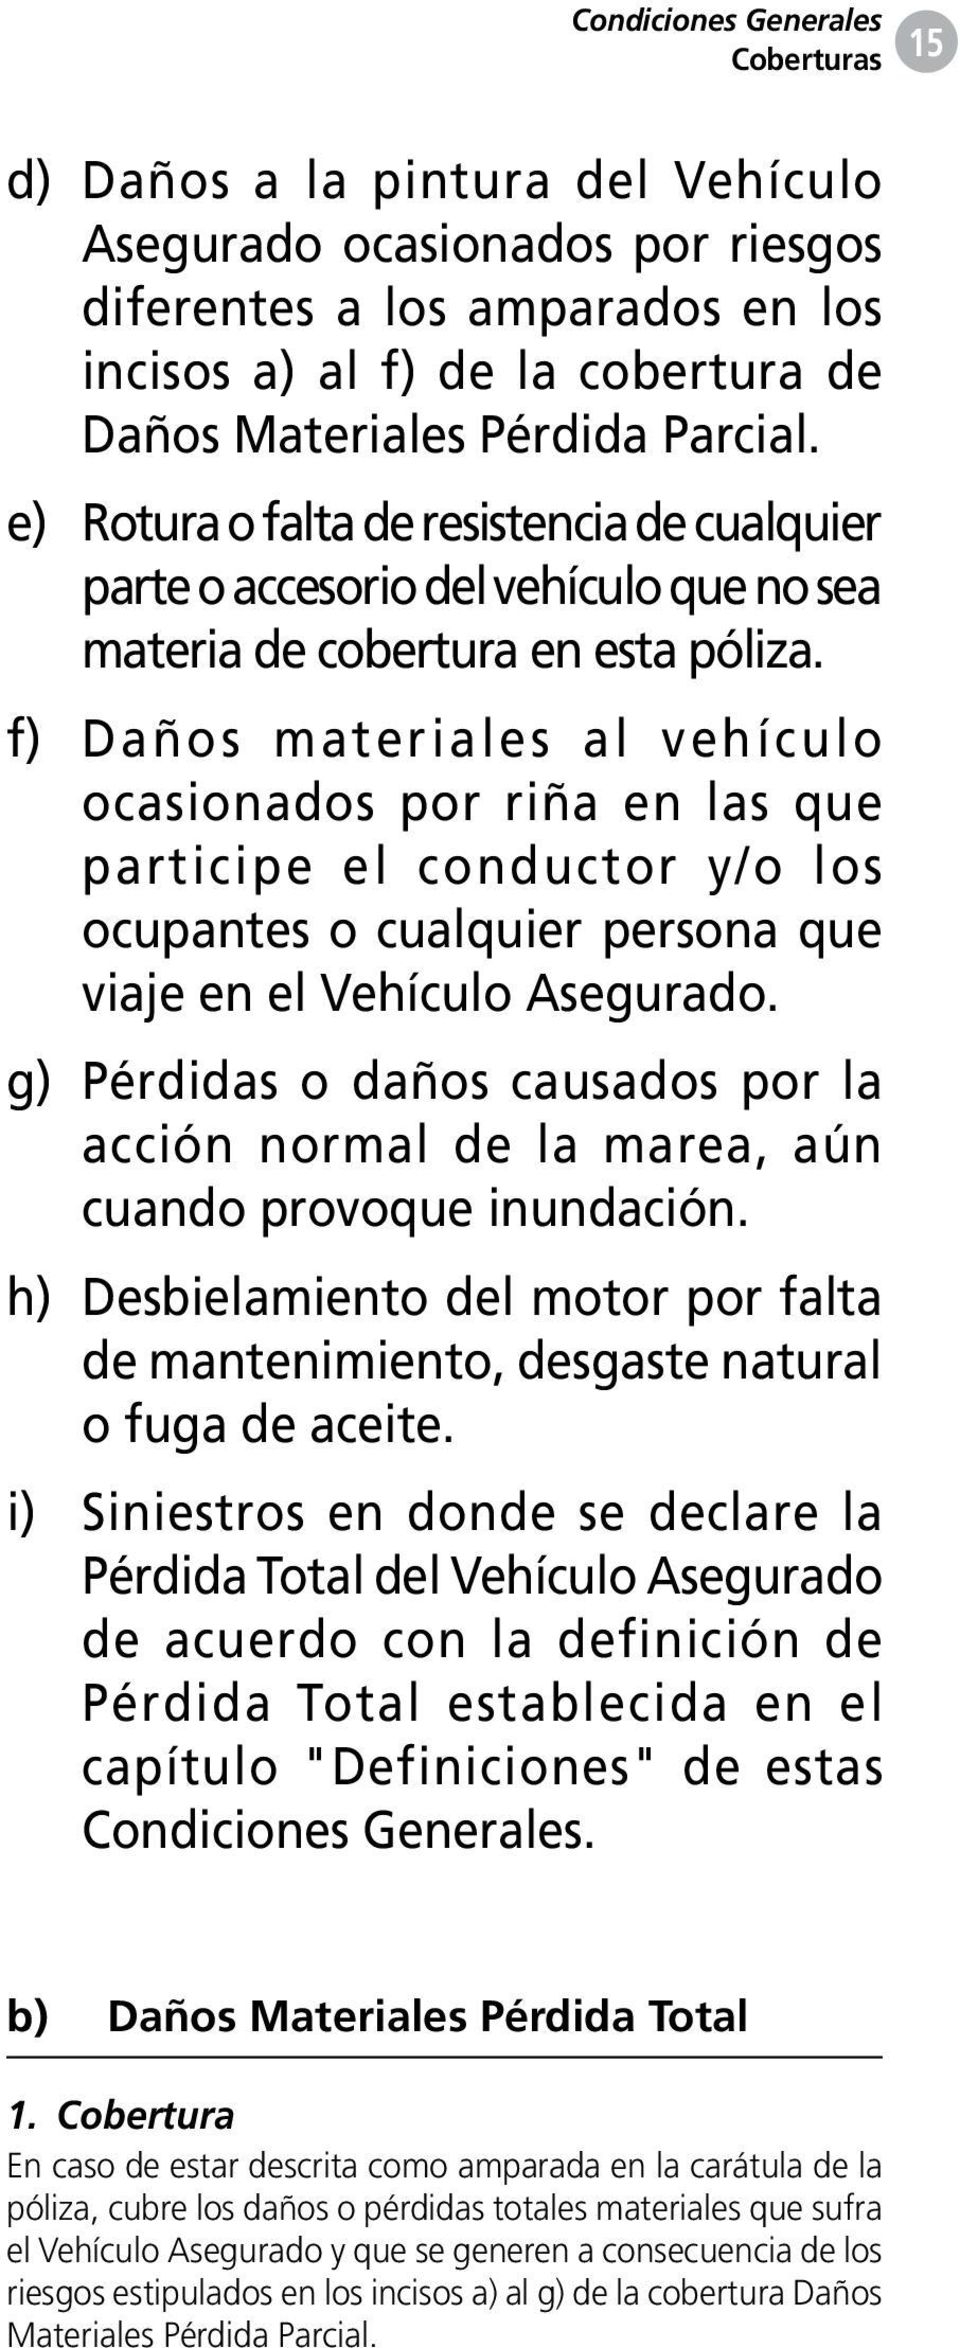 f) Daños materiales al vehículo ocasionados por riña en las que participe el conductor y/o los ocupantes o cualquier persona que viaje en el Vehículo Asegurado.